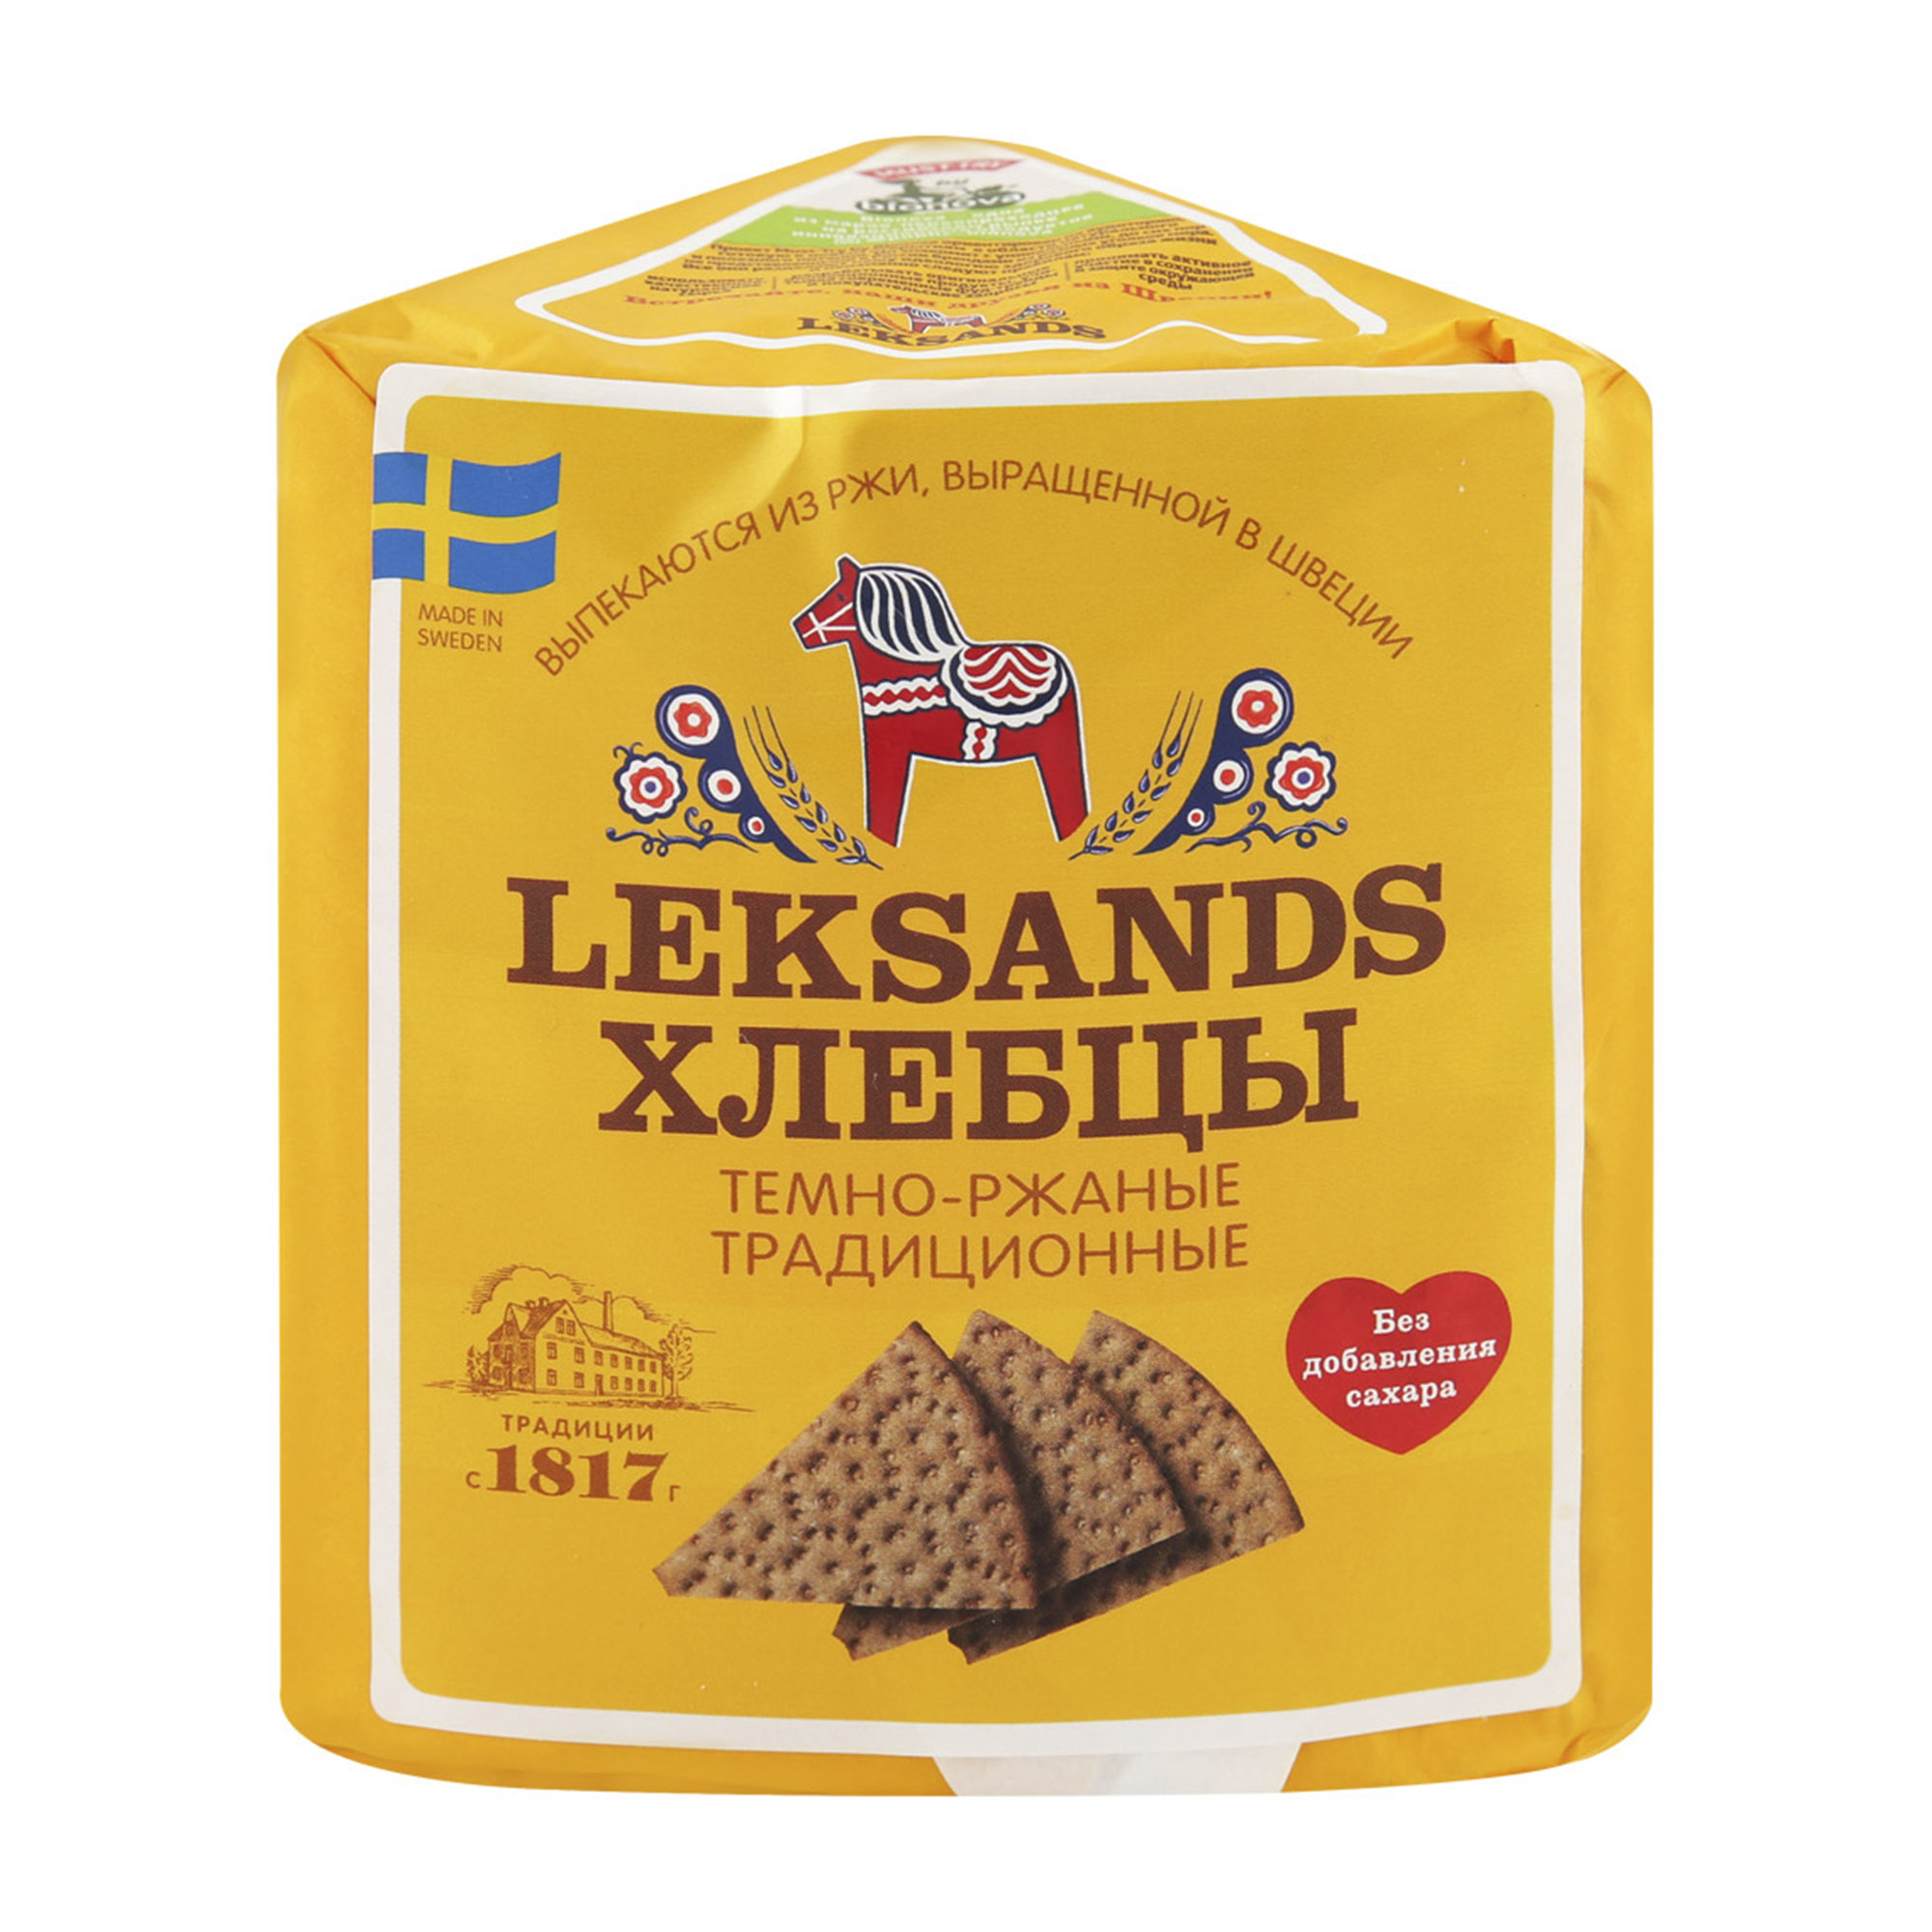 Хлебцы Leksands Темно-ржаные традиционные 200 г - фото 1